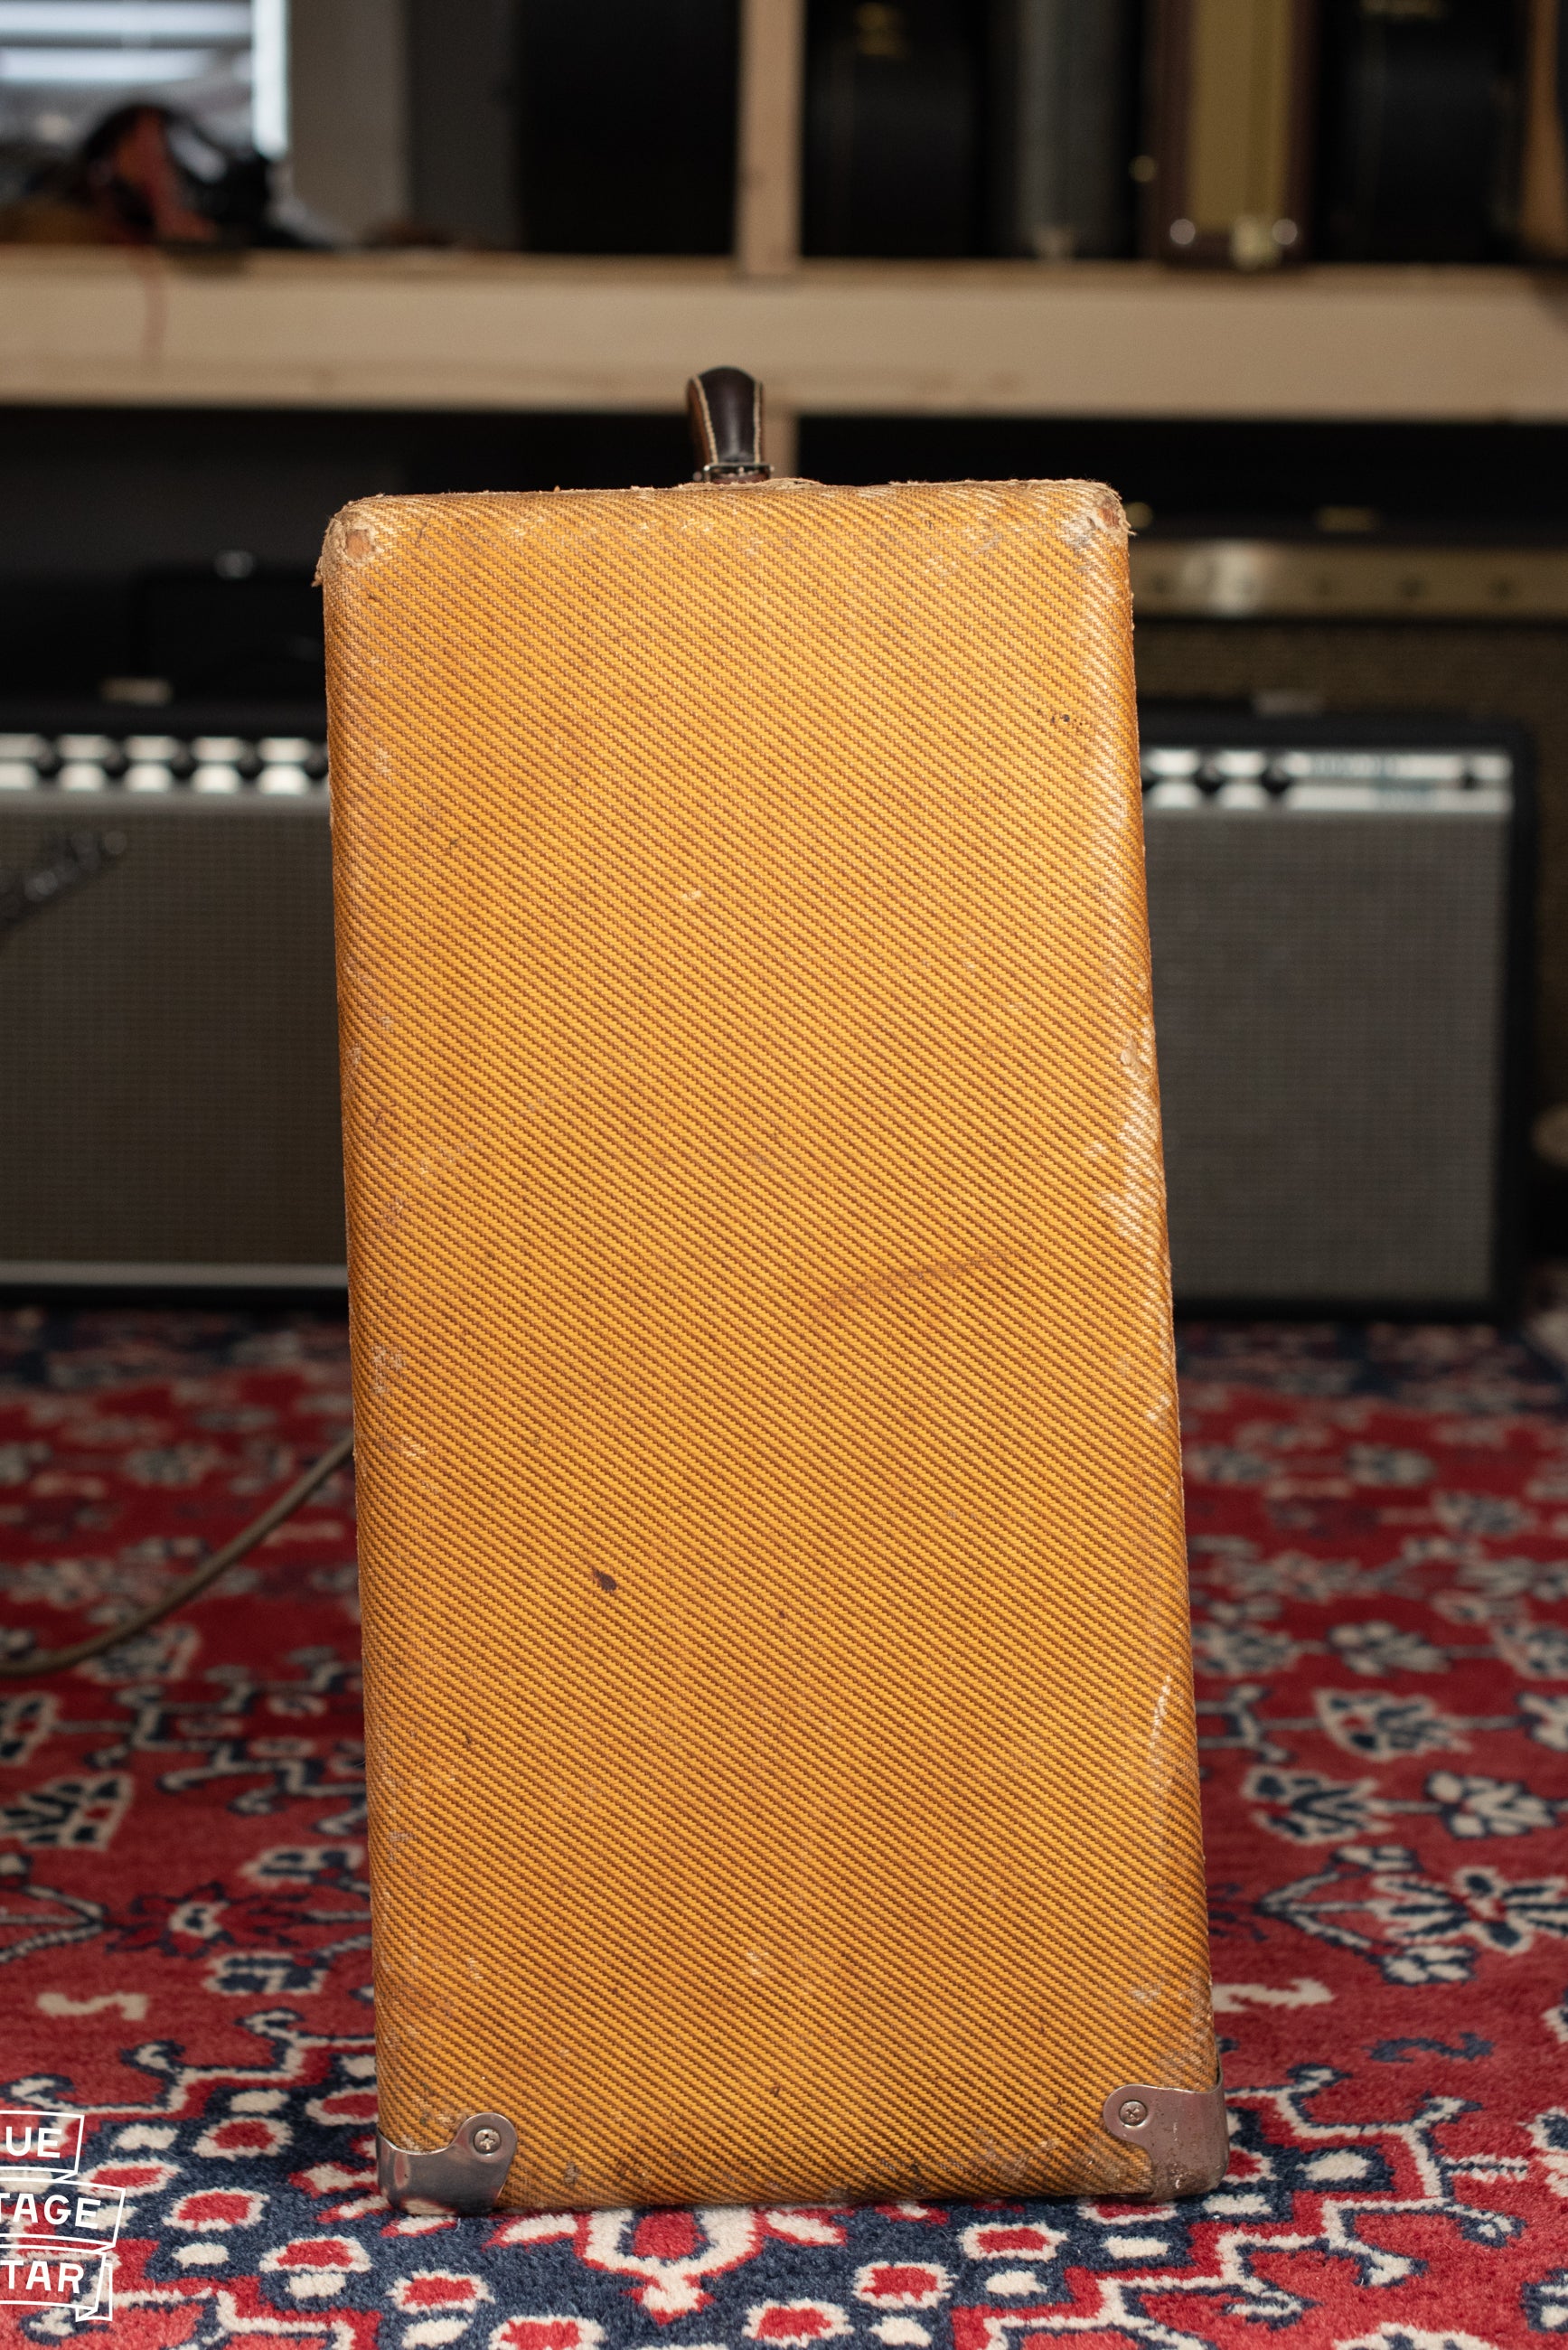 Fender tweed amp